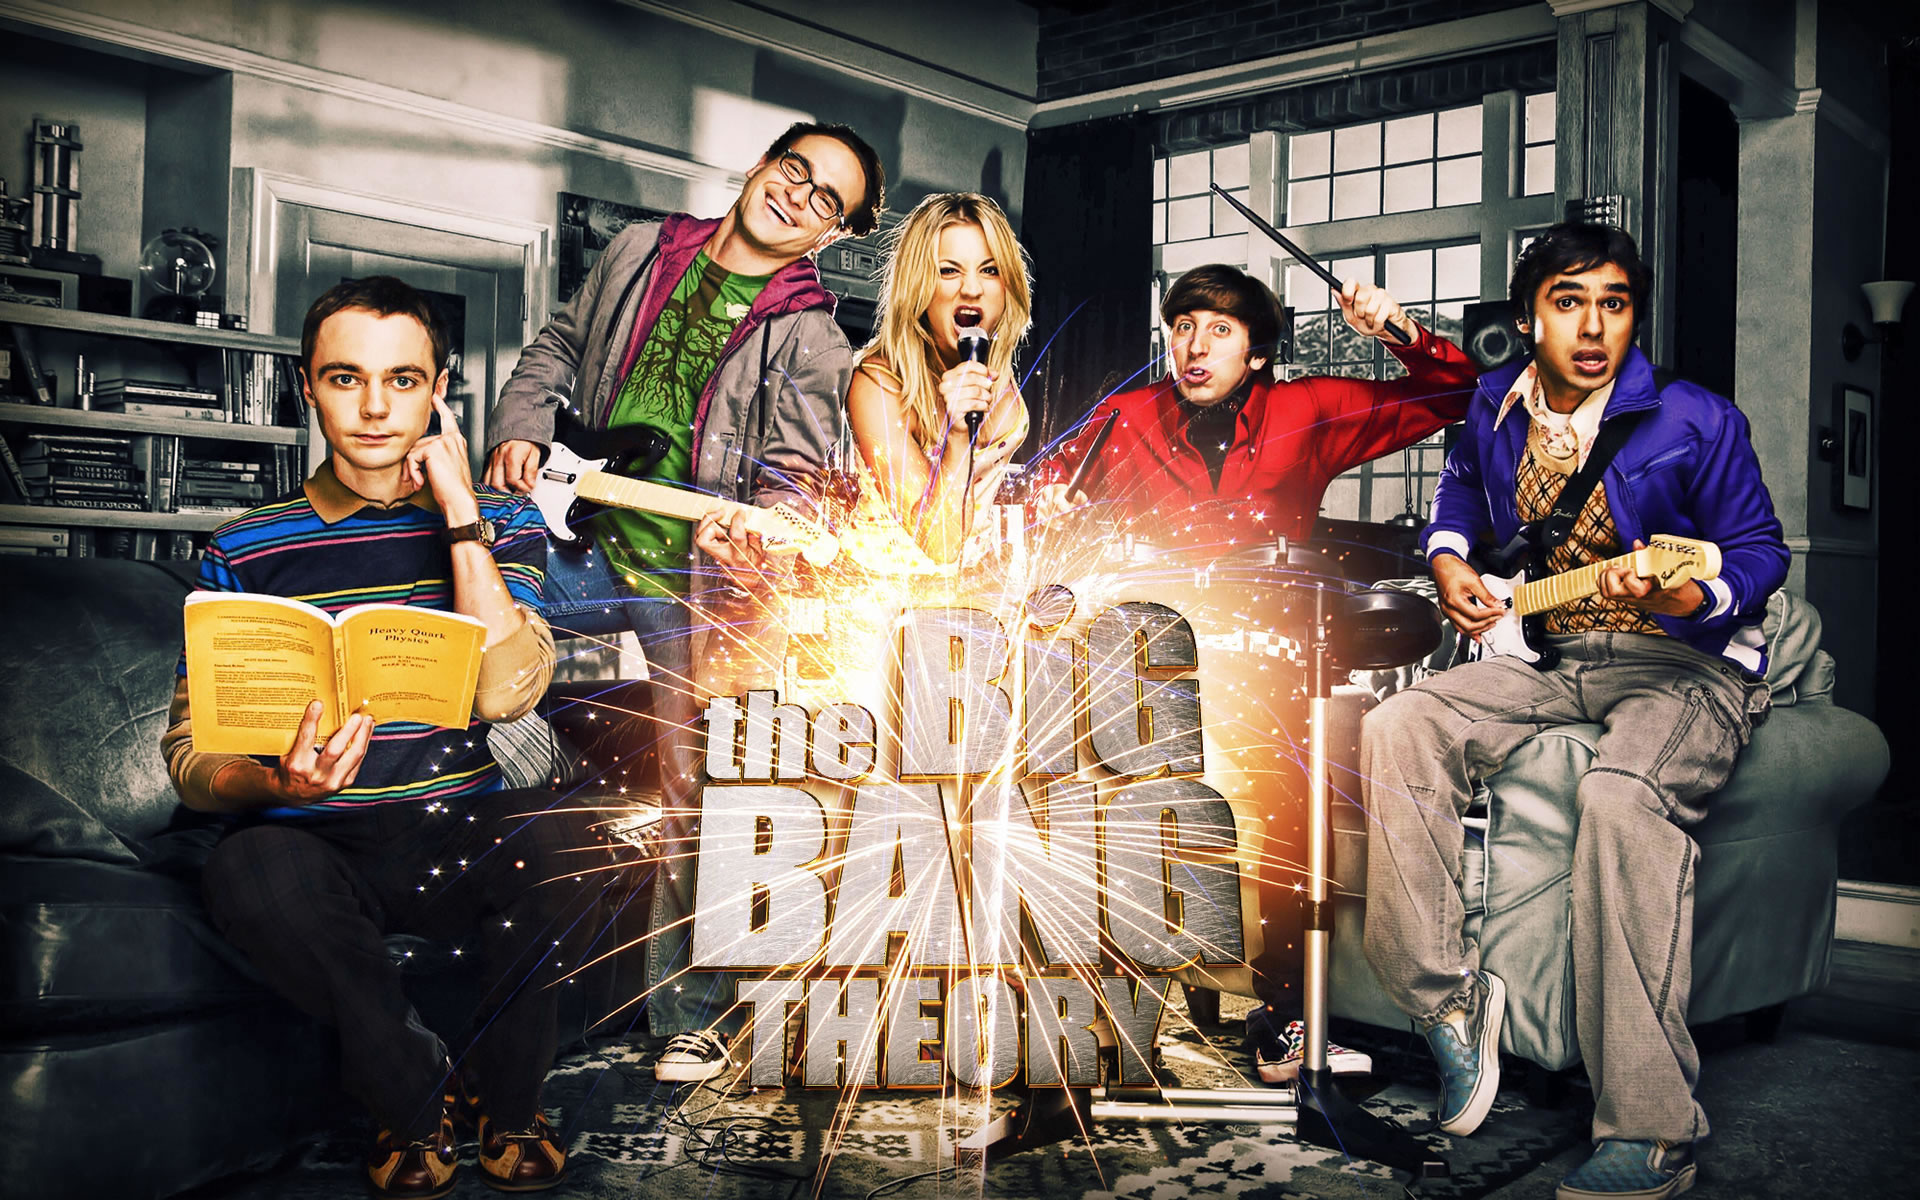 Wallpaper The Big Bang Theory